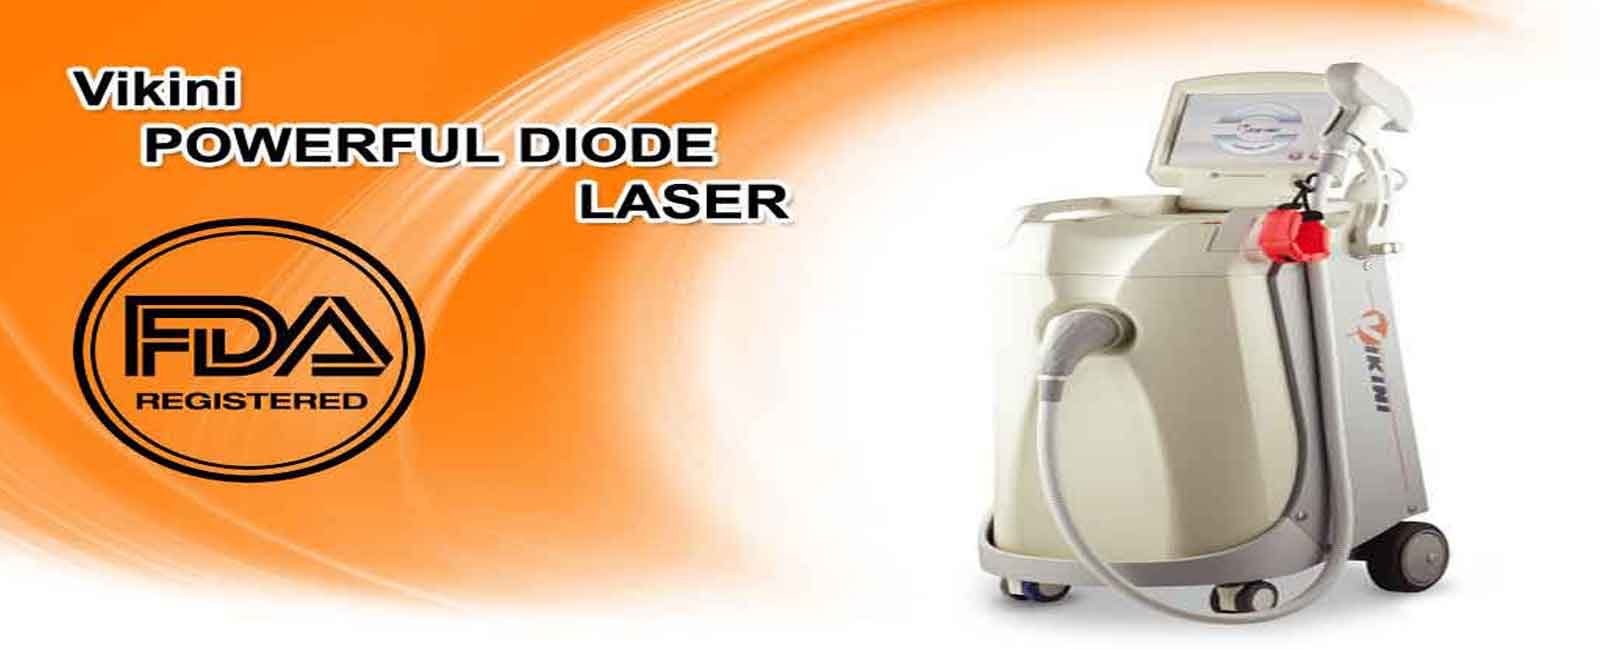 خرید و فروش دستگاه لیزر دایود ویکینی Diode Laser Vikini